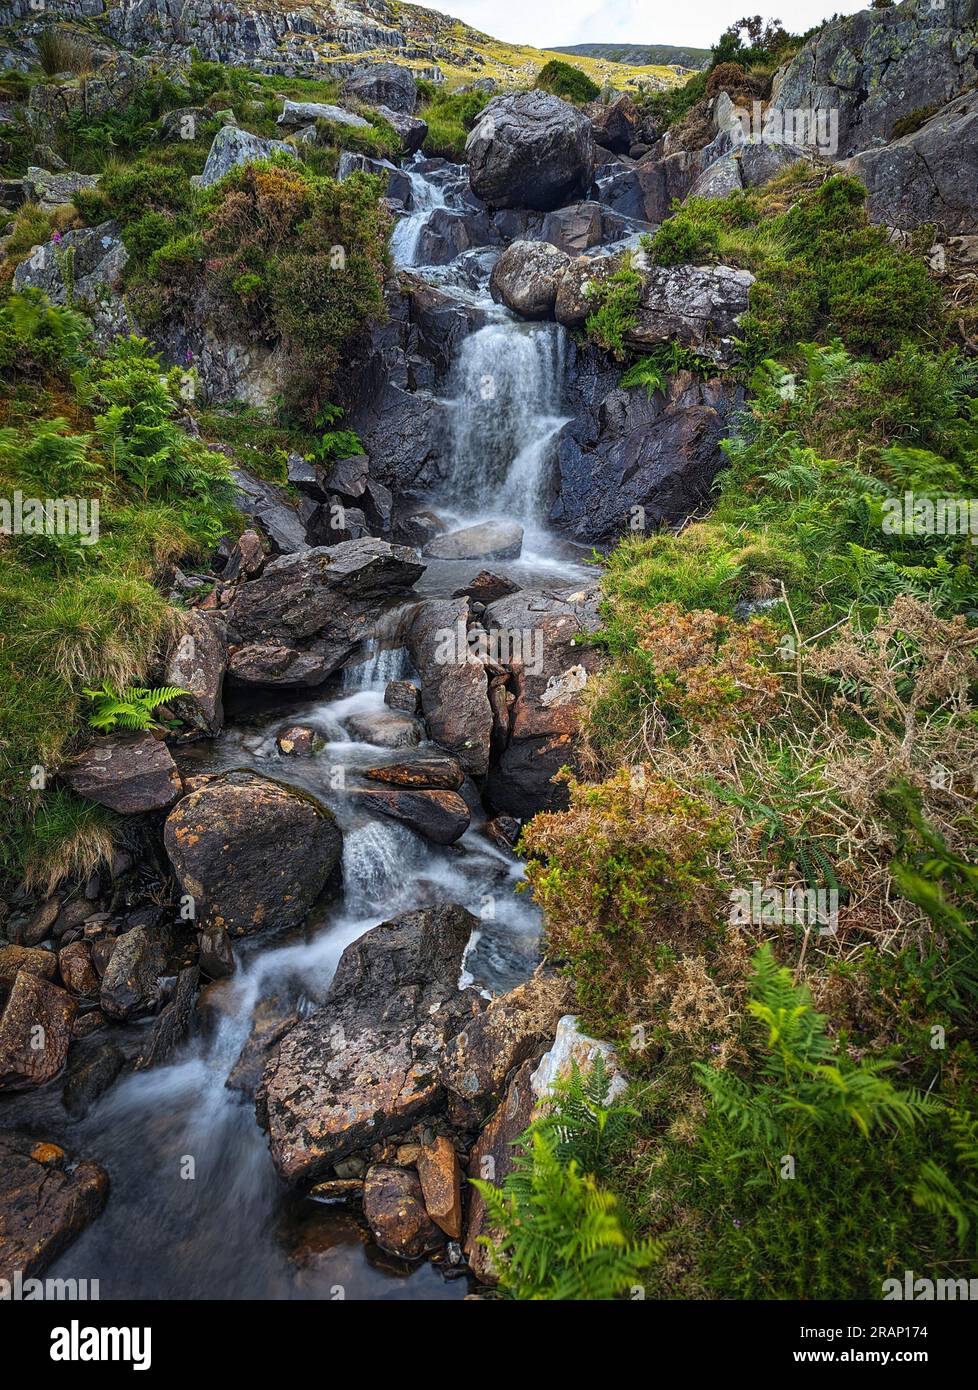 Die malerischen Gewässer im Tal. Ogwen Valley, Wales: Ein ATEMBERAUBENDES Bild von Großbritanniens berühmtem und beliebtem Tryfan-Berg wurde eingefangen Stockfoto